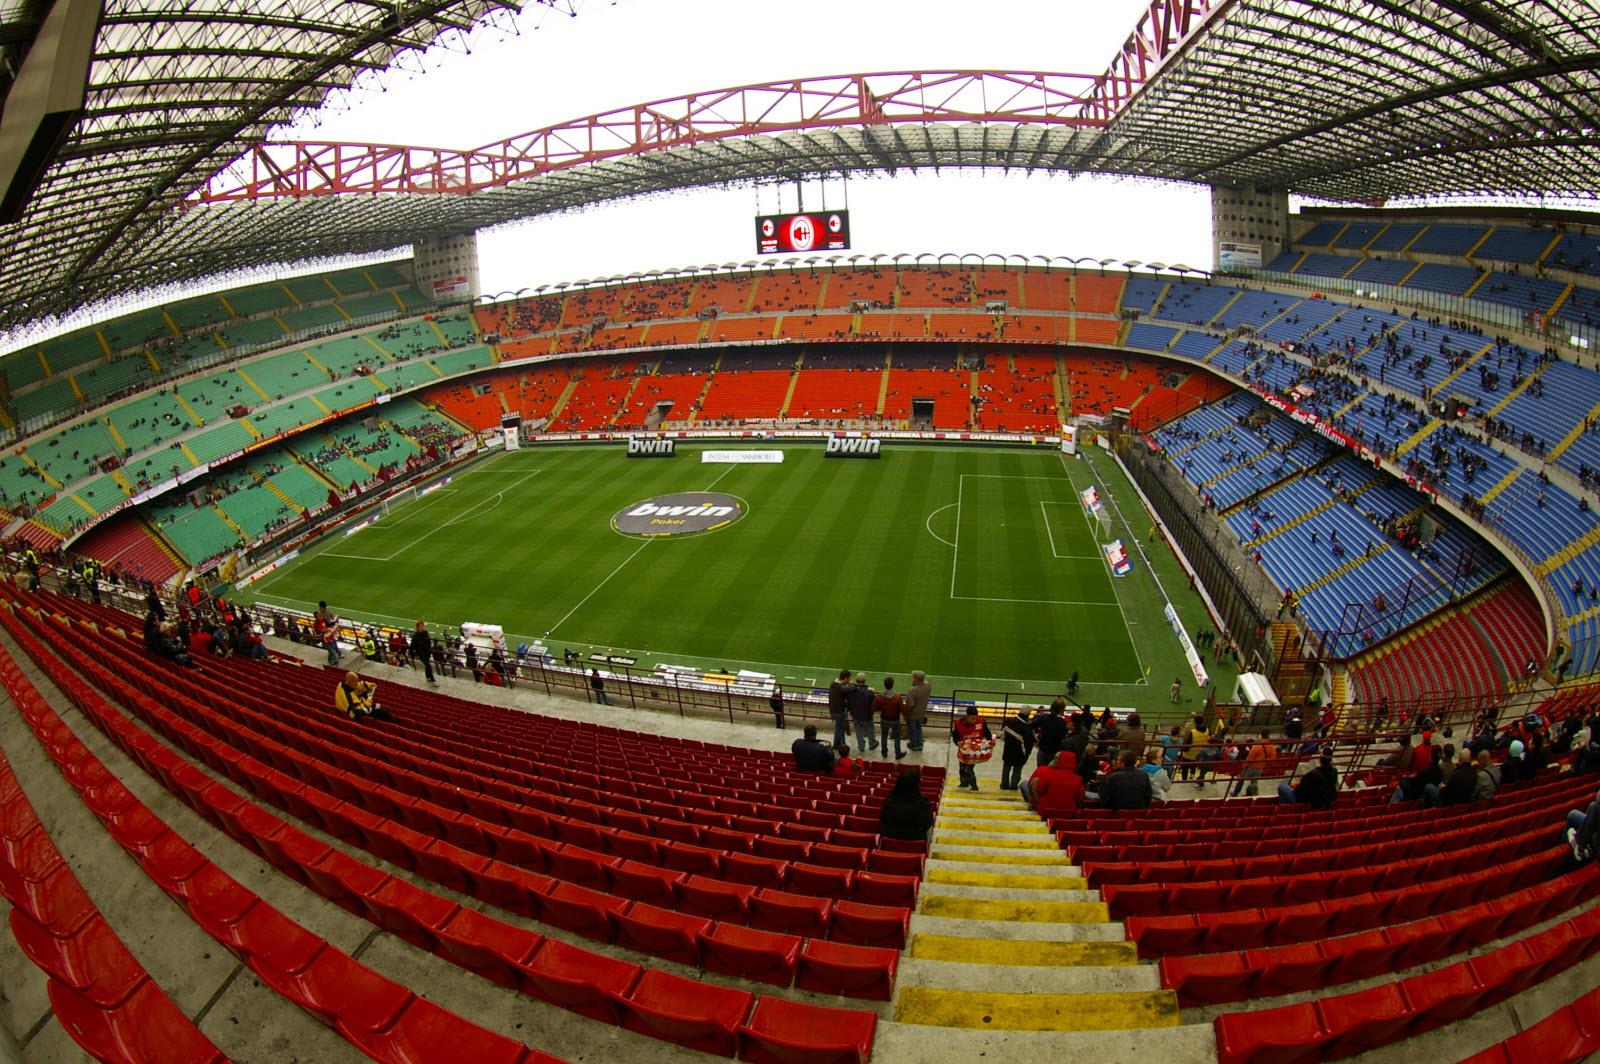 Foot/Covid: la capacité des stades italiens limitée à 5.000 spectateurs

